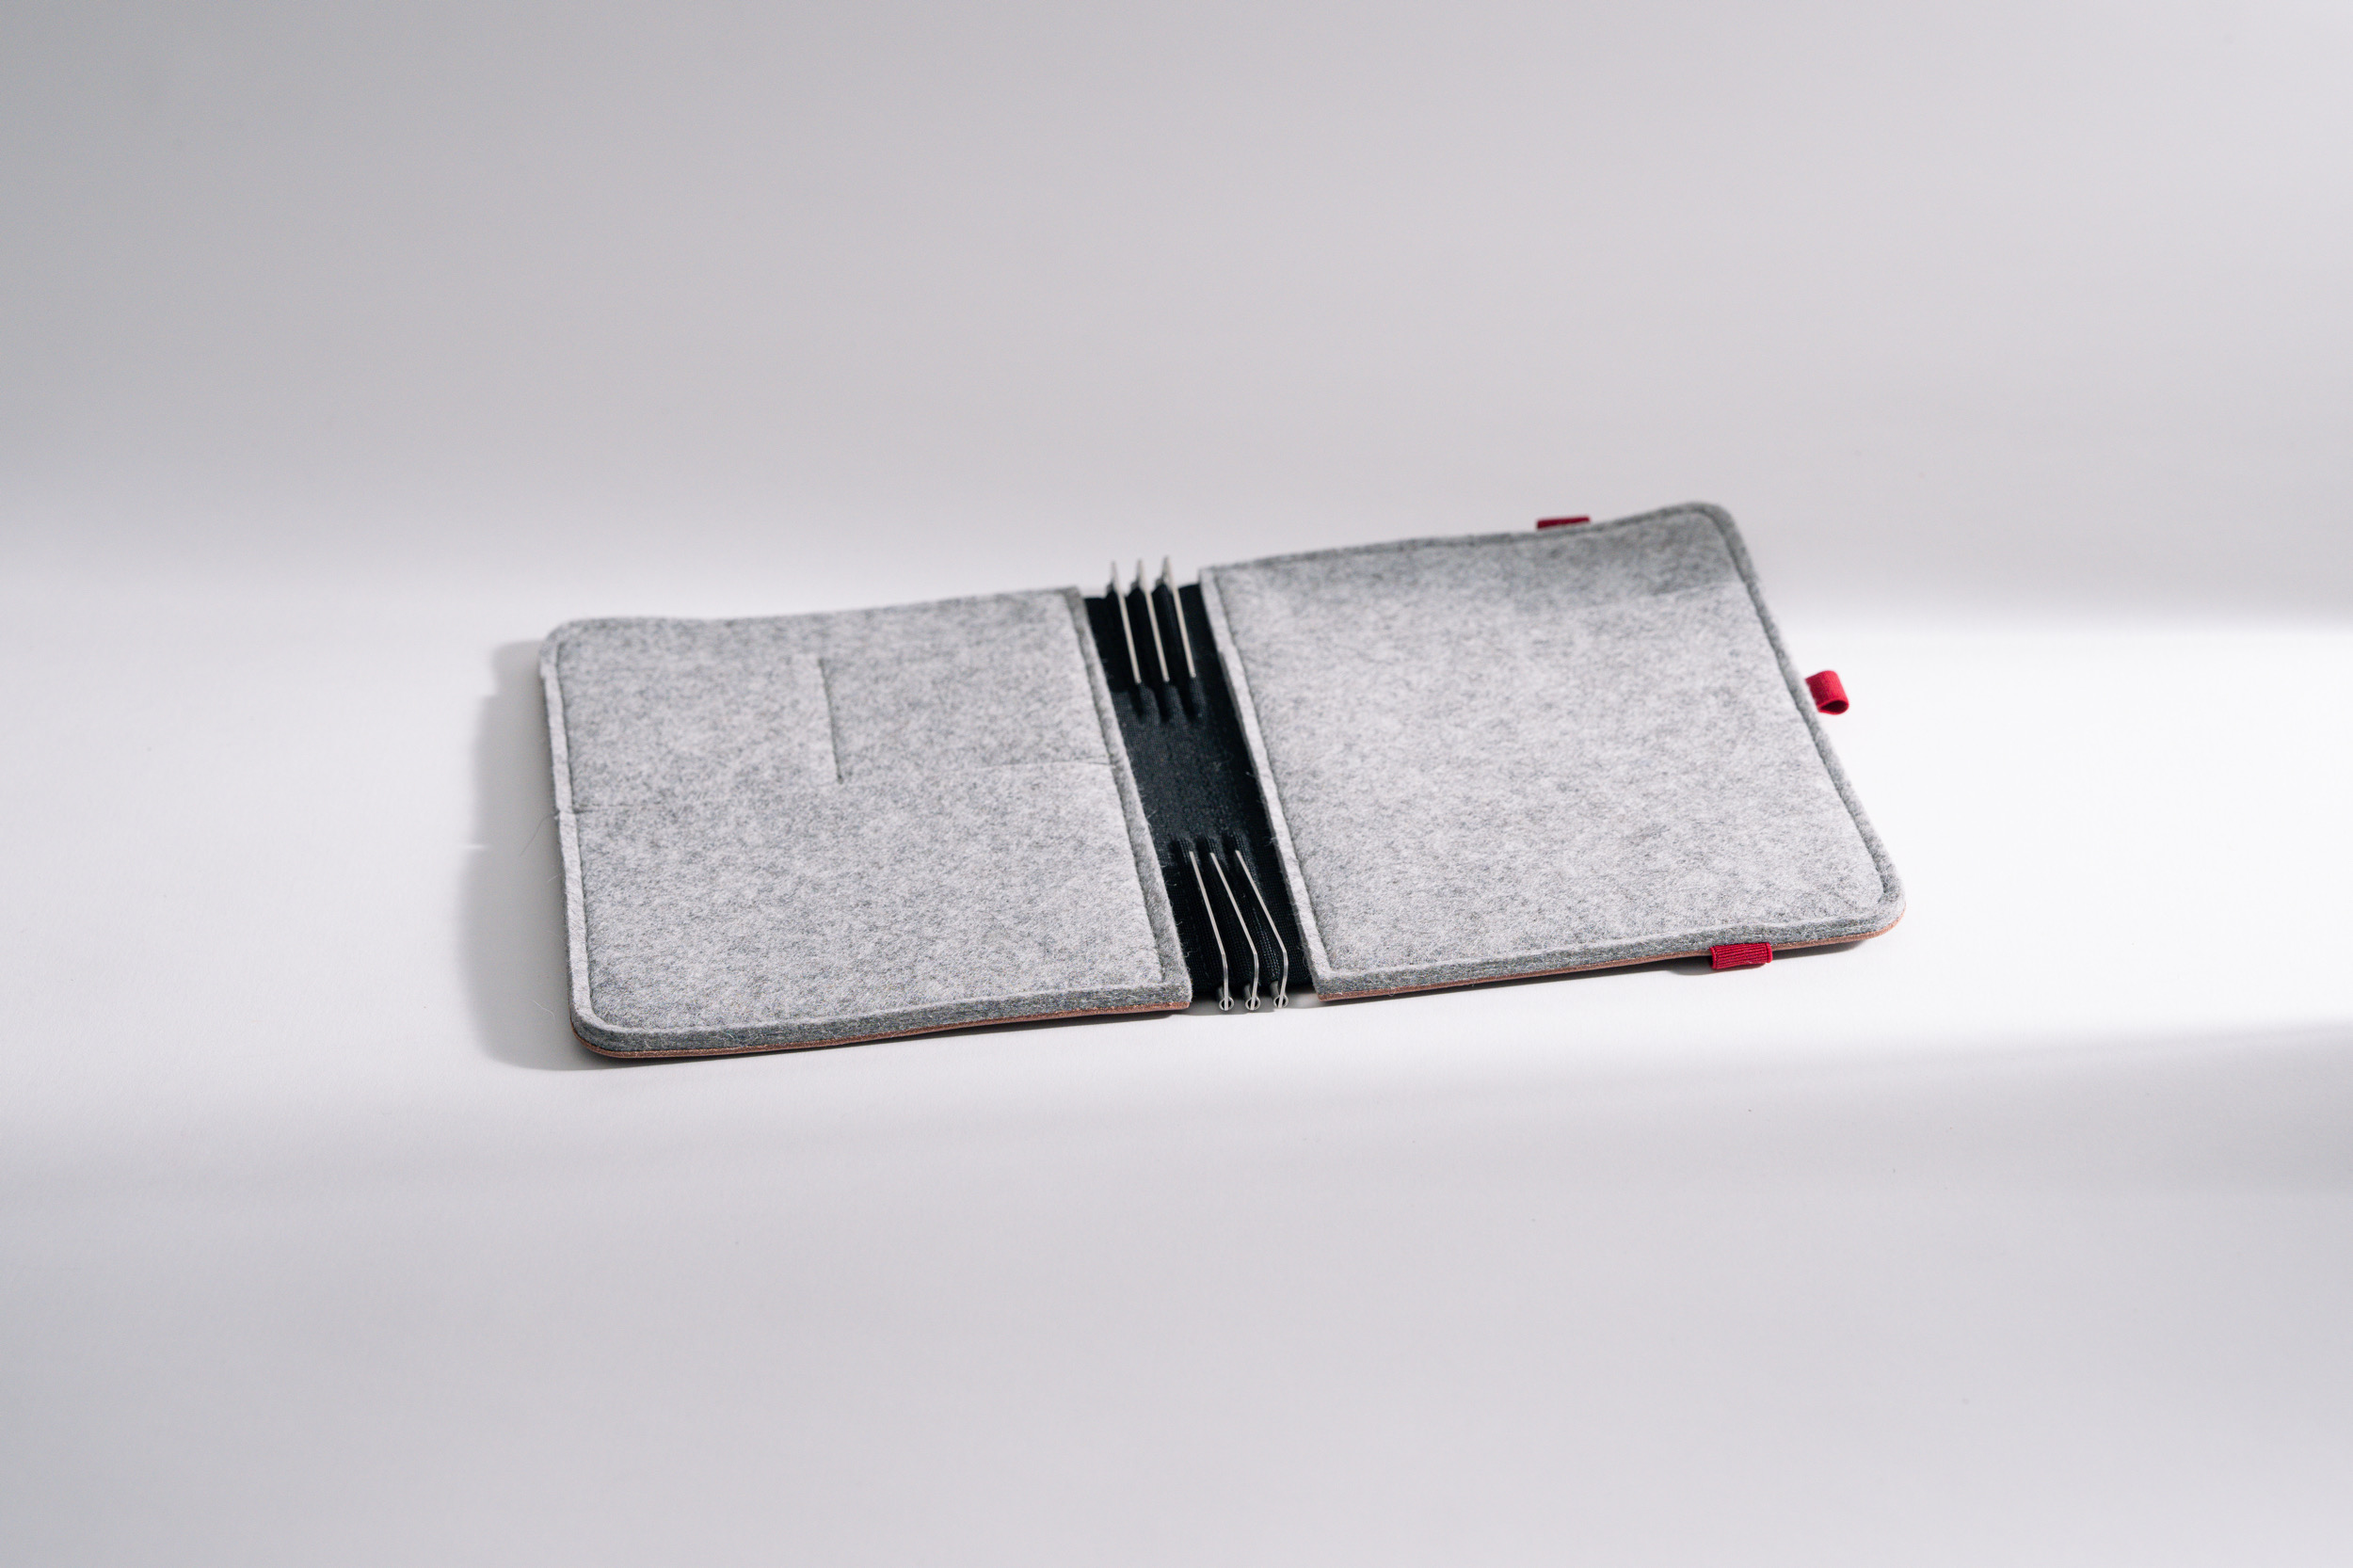 Roterfaden Taschenbegleiter BS_20 mit chromfreiem Glattleder, Merino Wollfilz und vielseitigen Innentaschen für perfekte Organisation.